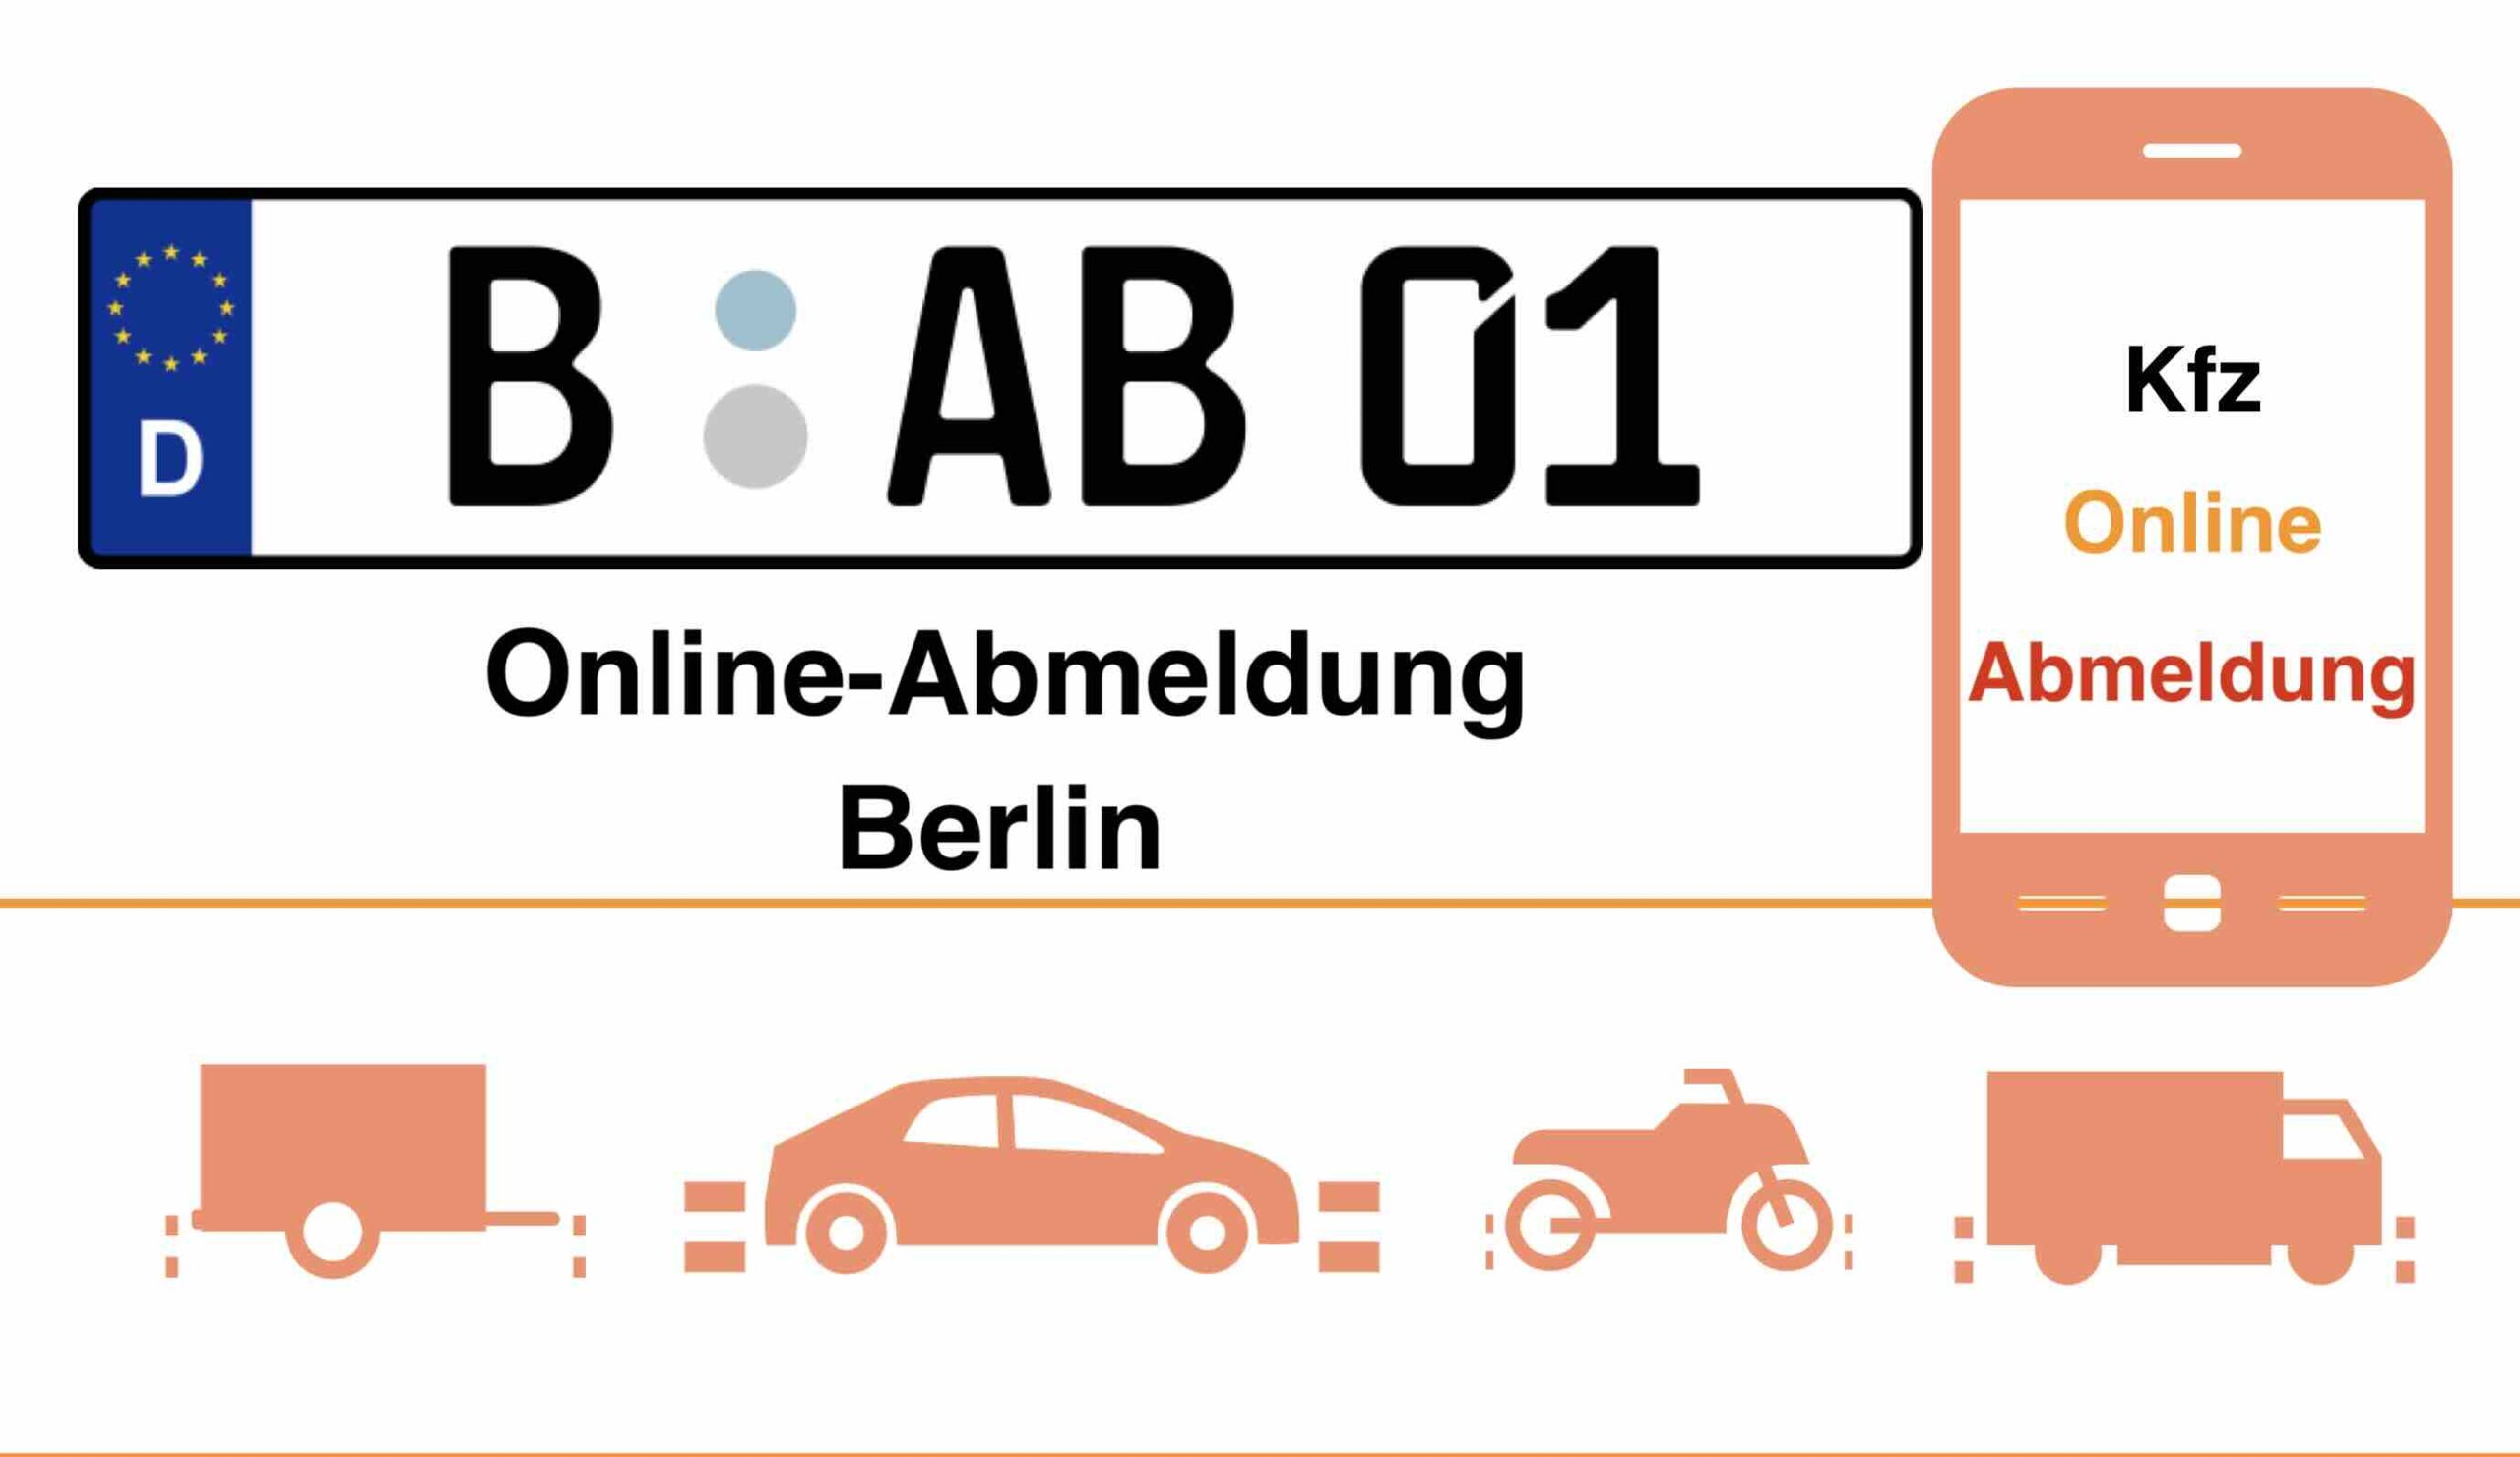 Online-Abmeldung in Berlin 